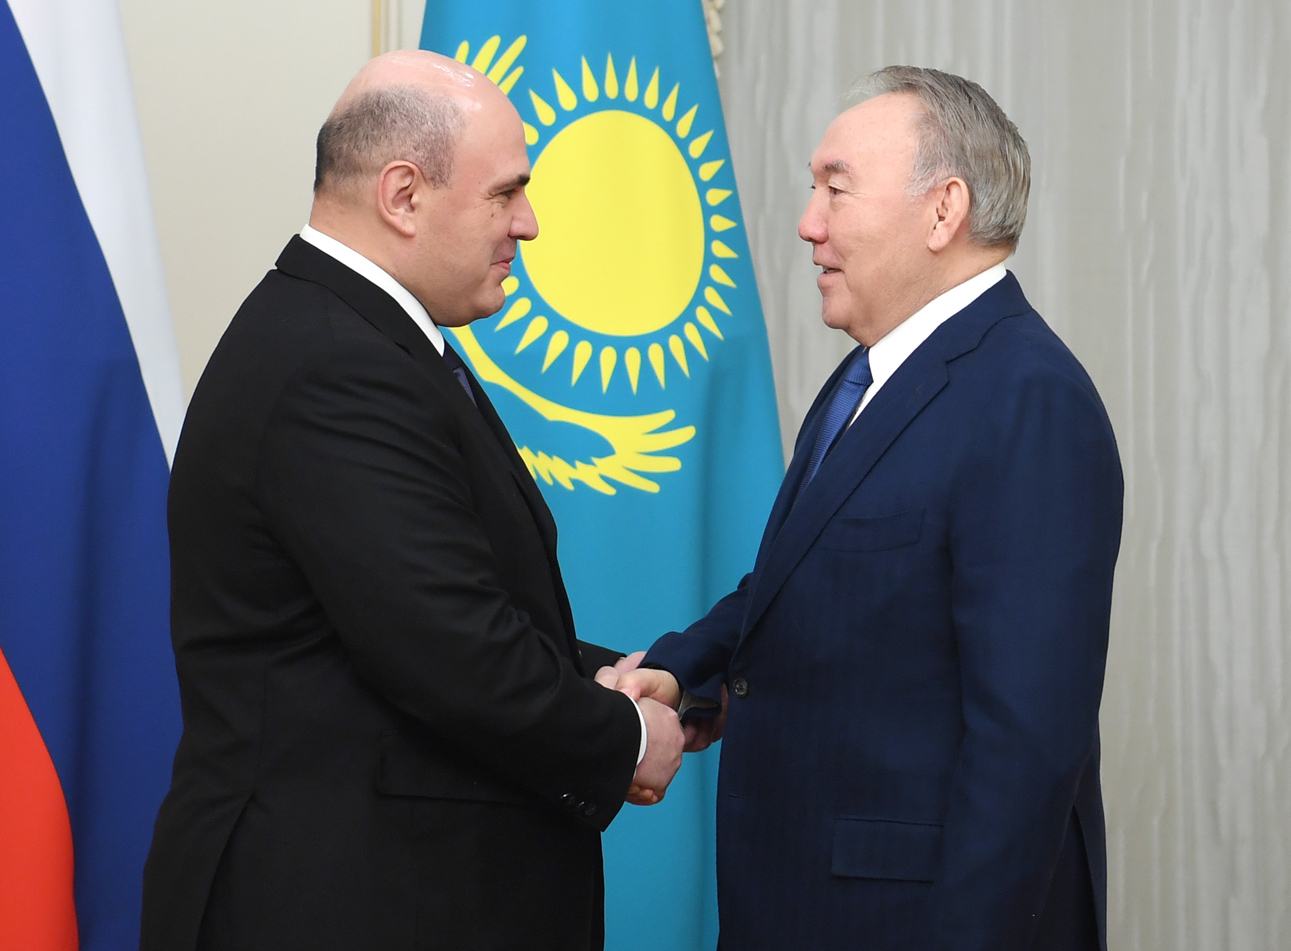 Нұрсұлтан Назарбаев Ресей Федерациясы Үкіметінің төрағасымен кездесті